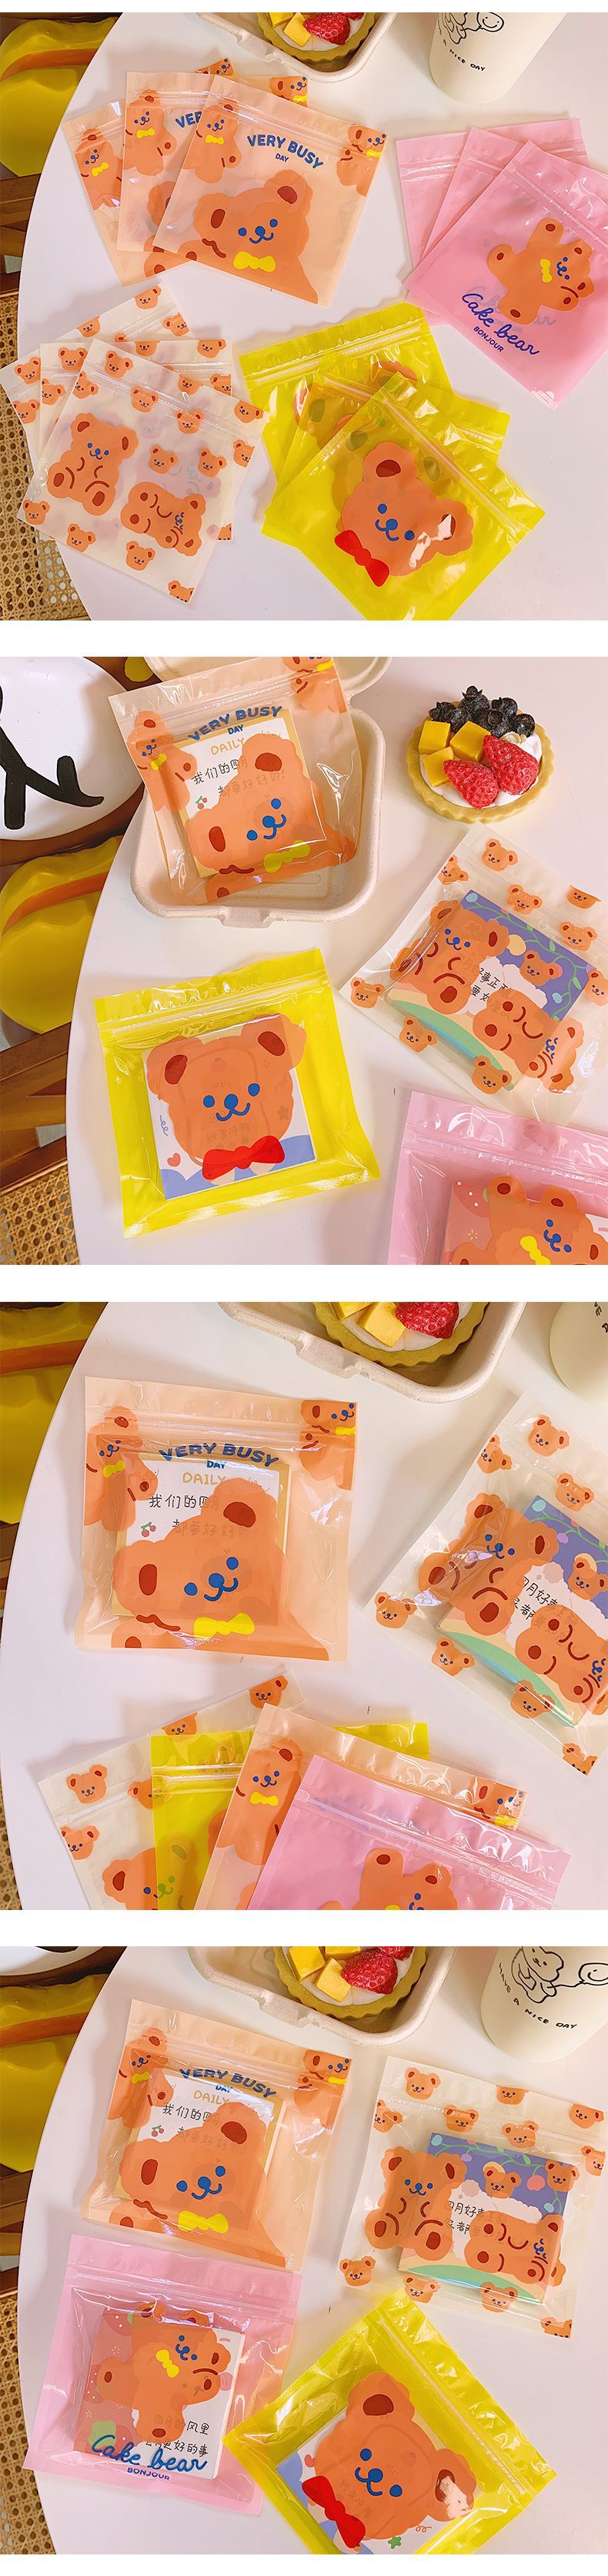 可愛小熊夾鏈袋 創意小熊印花密封袋 包裝糖果袋 包裝袋 夾鏈袋2